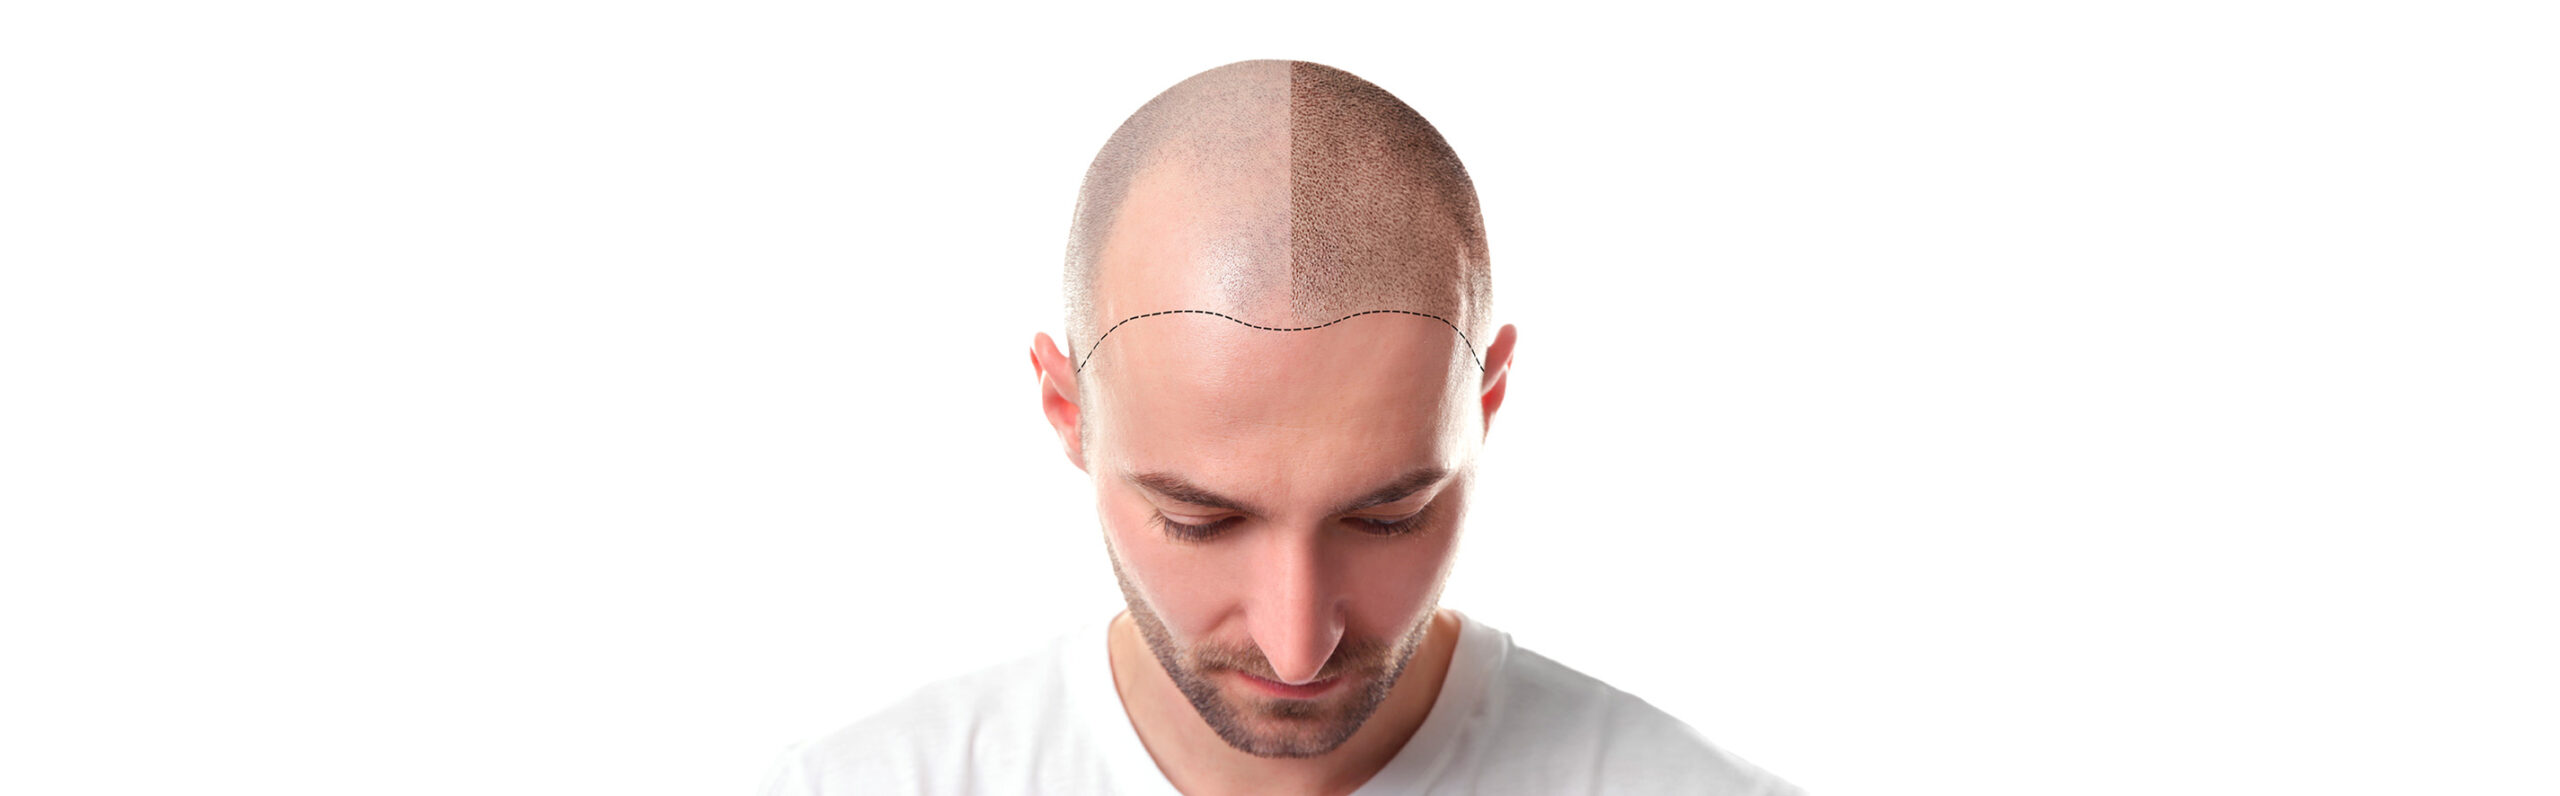 Alopecia o caída del cabello